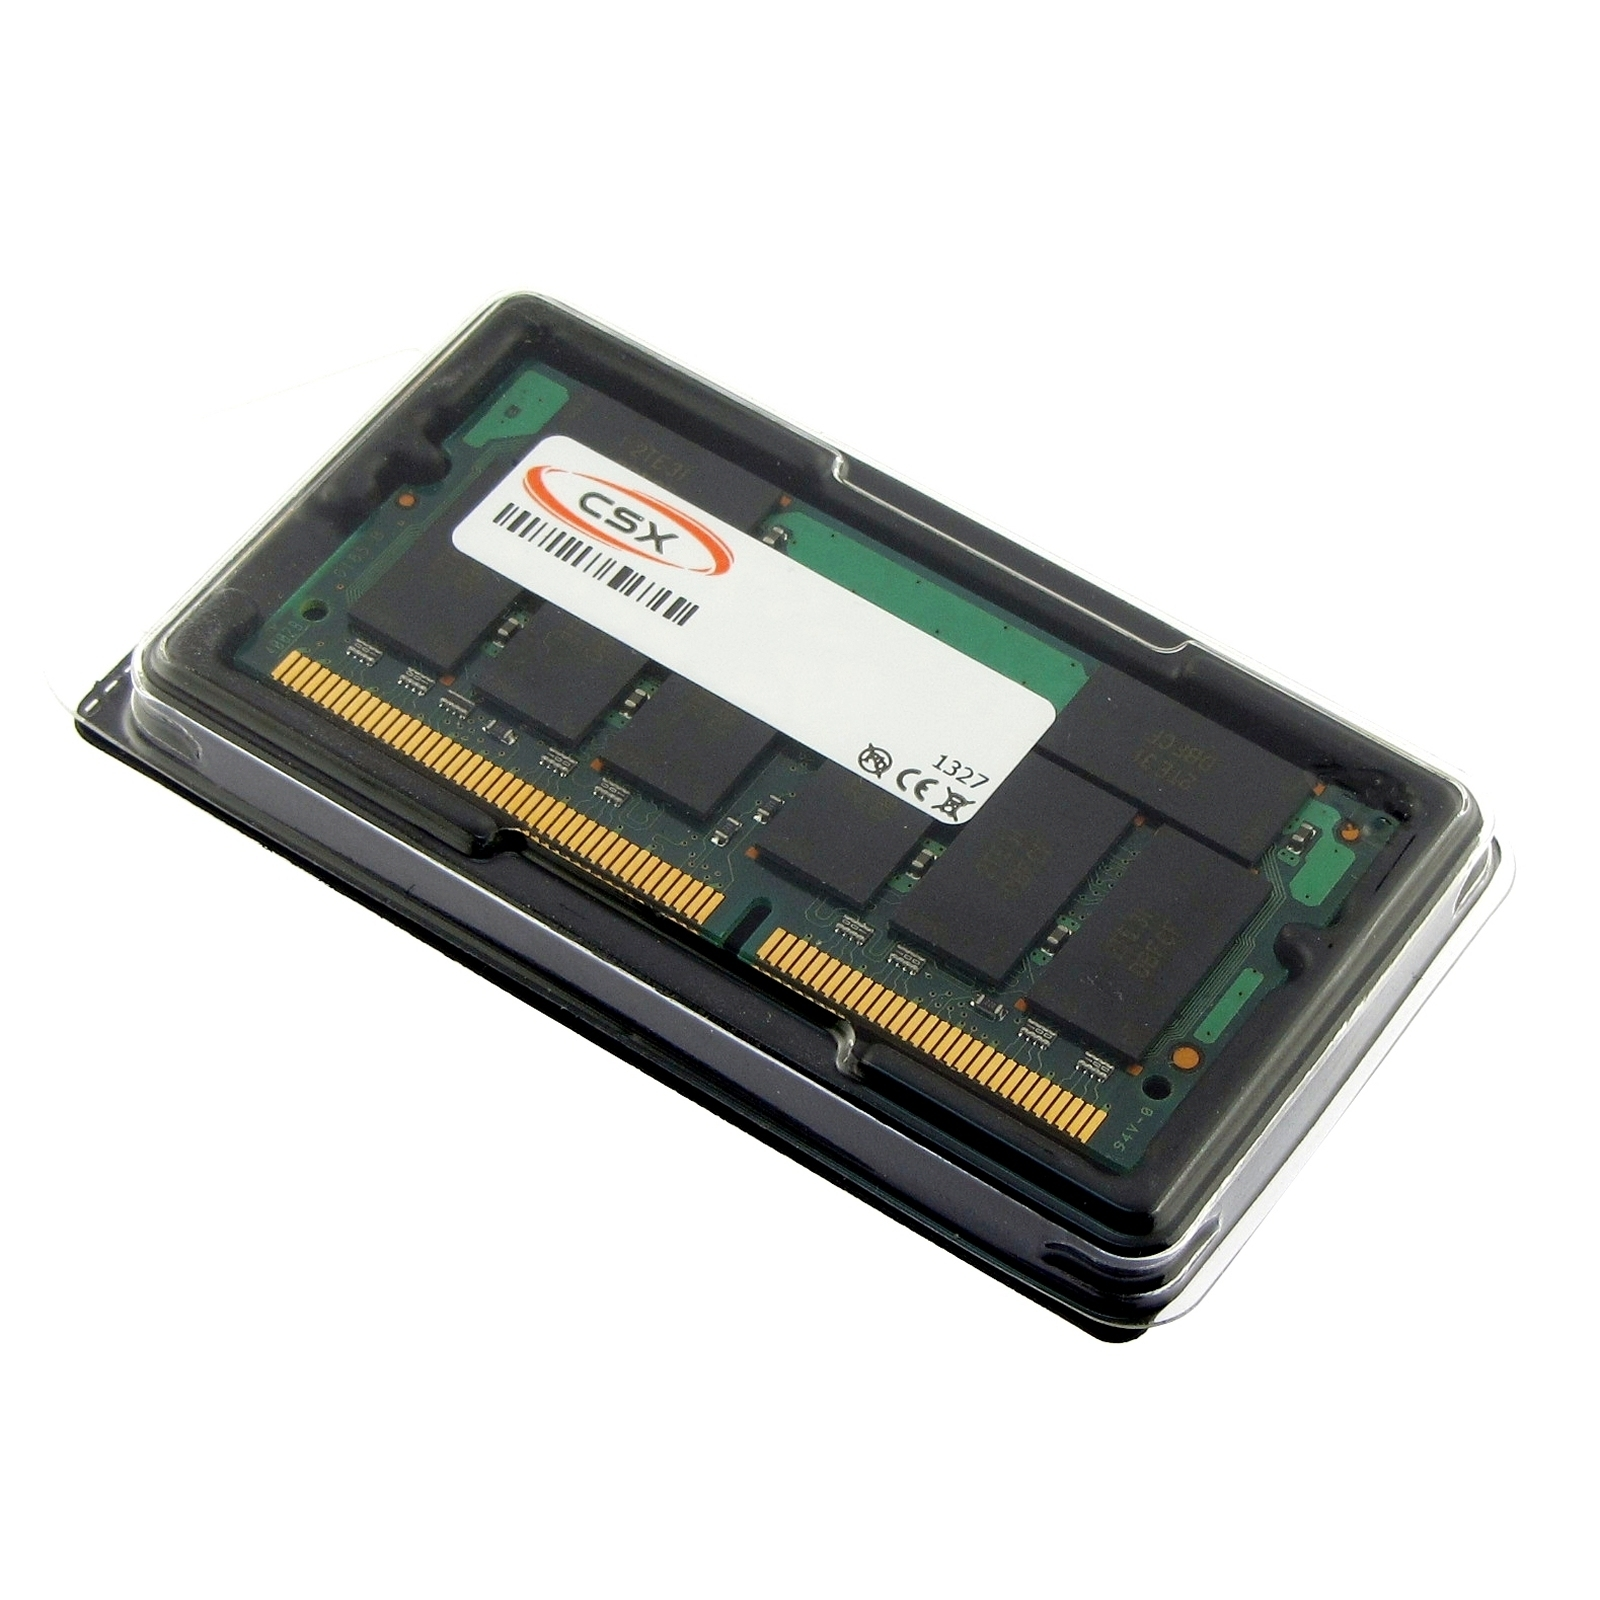 MB SDRAM MTXTEC 710X Pro 512 MAXDATA für RAM Arbeitsspeicher MB 512 Notebook-Speicher